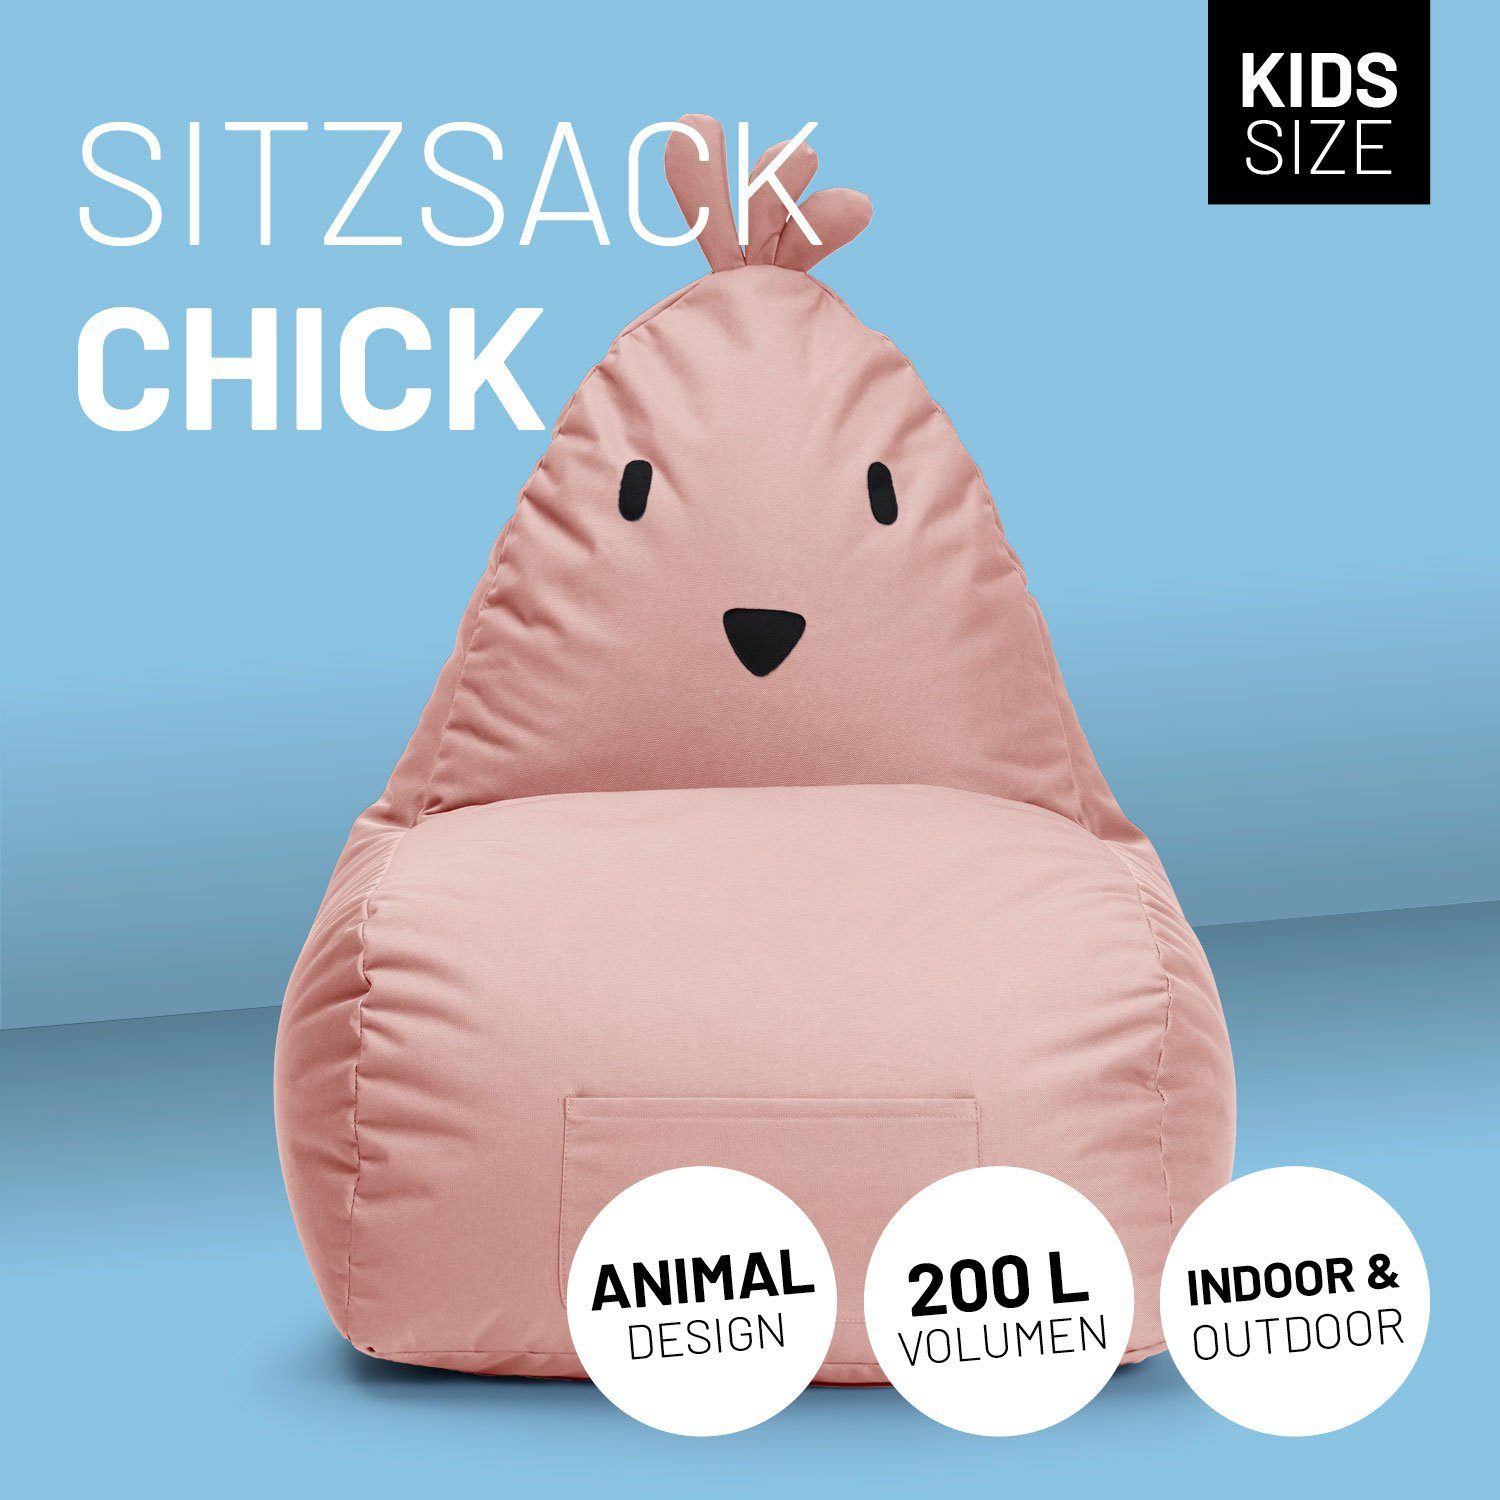 Kinder cm, Chick pflegeleicht Tier Sitzsack Kinderzimmer, Kindersitzkissen, niedliches im Wow Kissen Lumaland Pastellpink Effekt 80x75x75